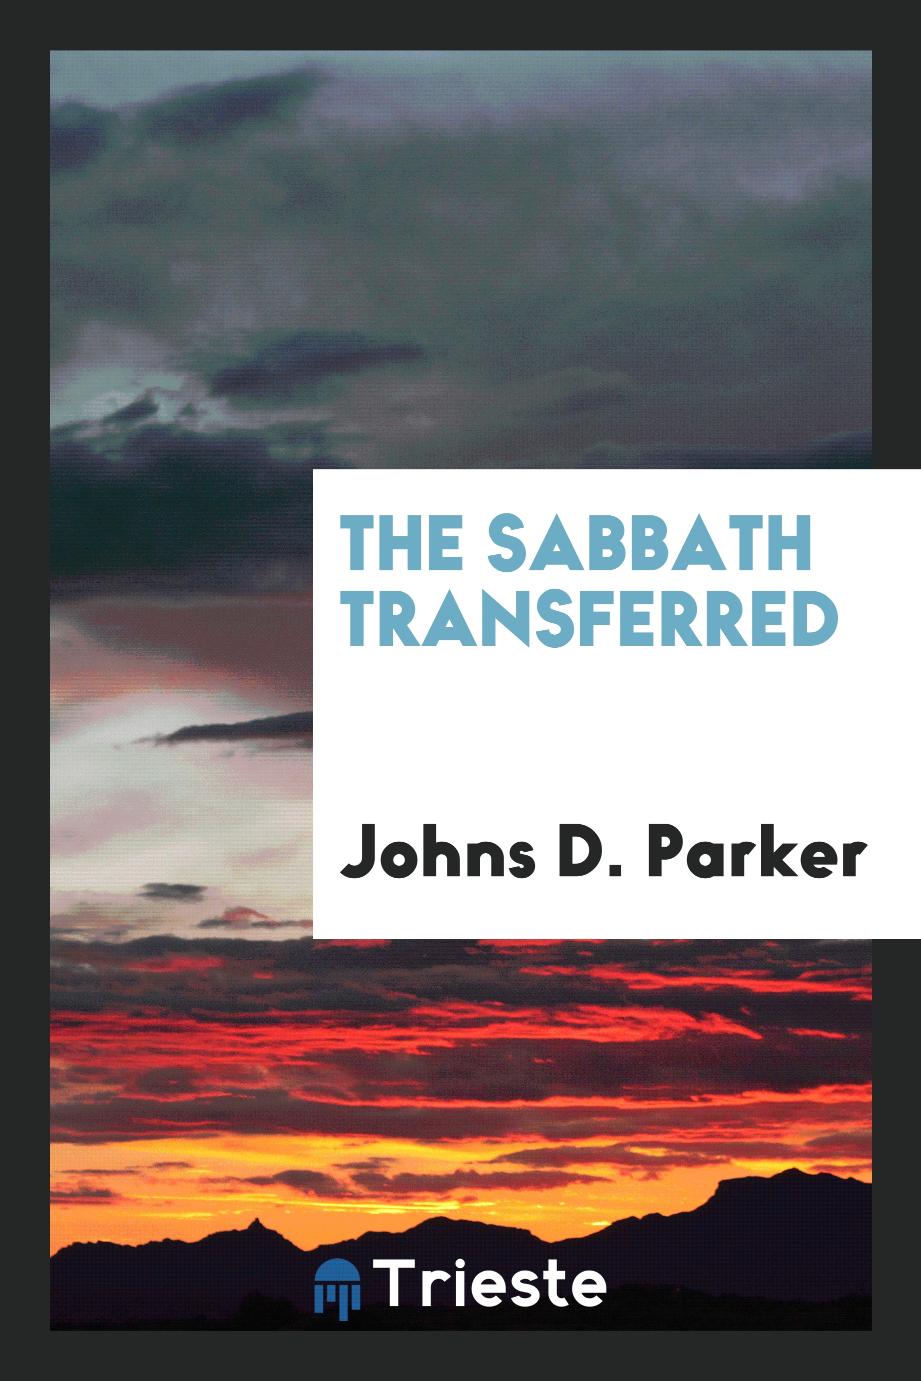 The Sabbath transferred